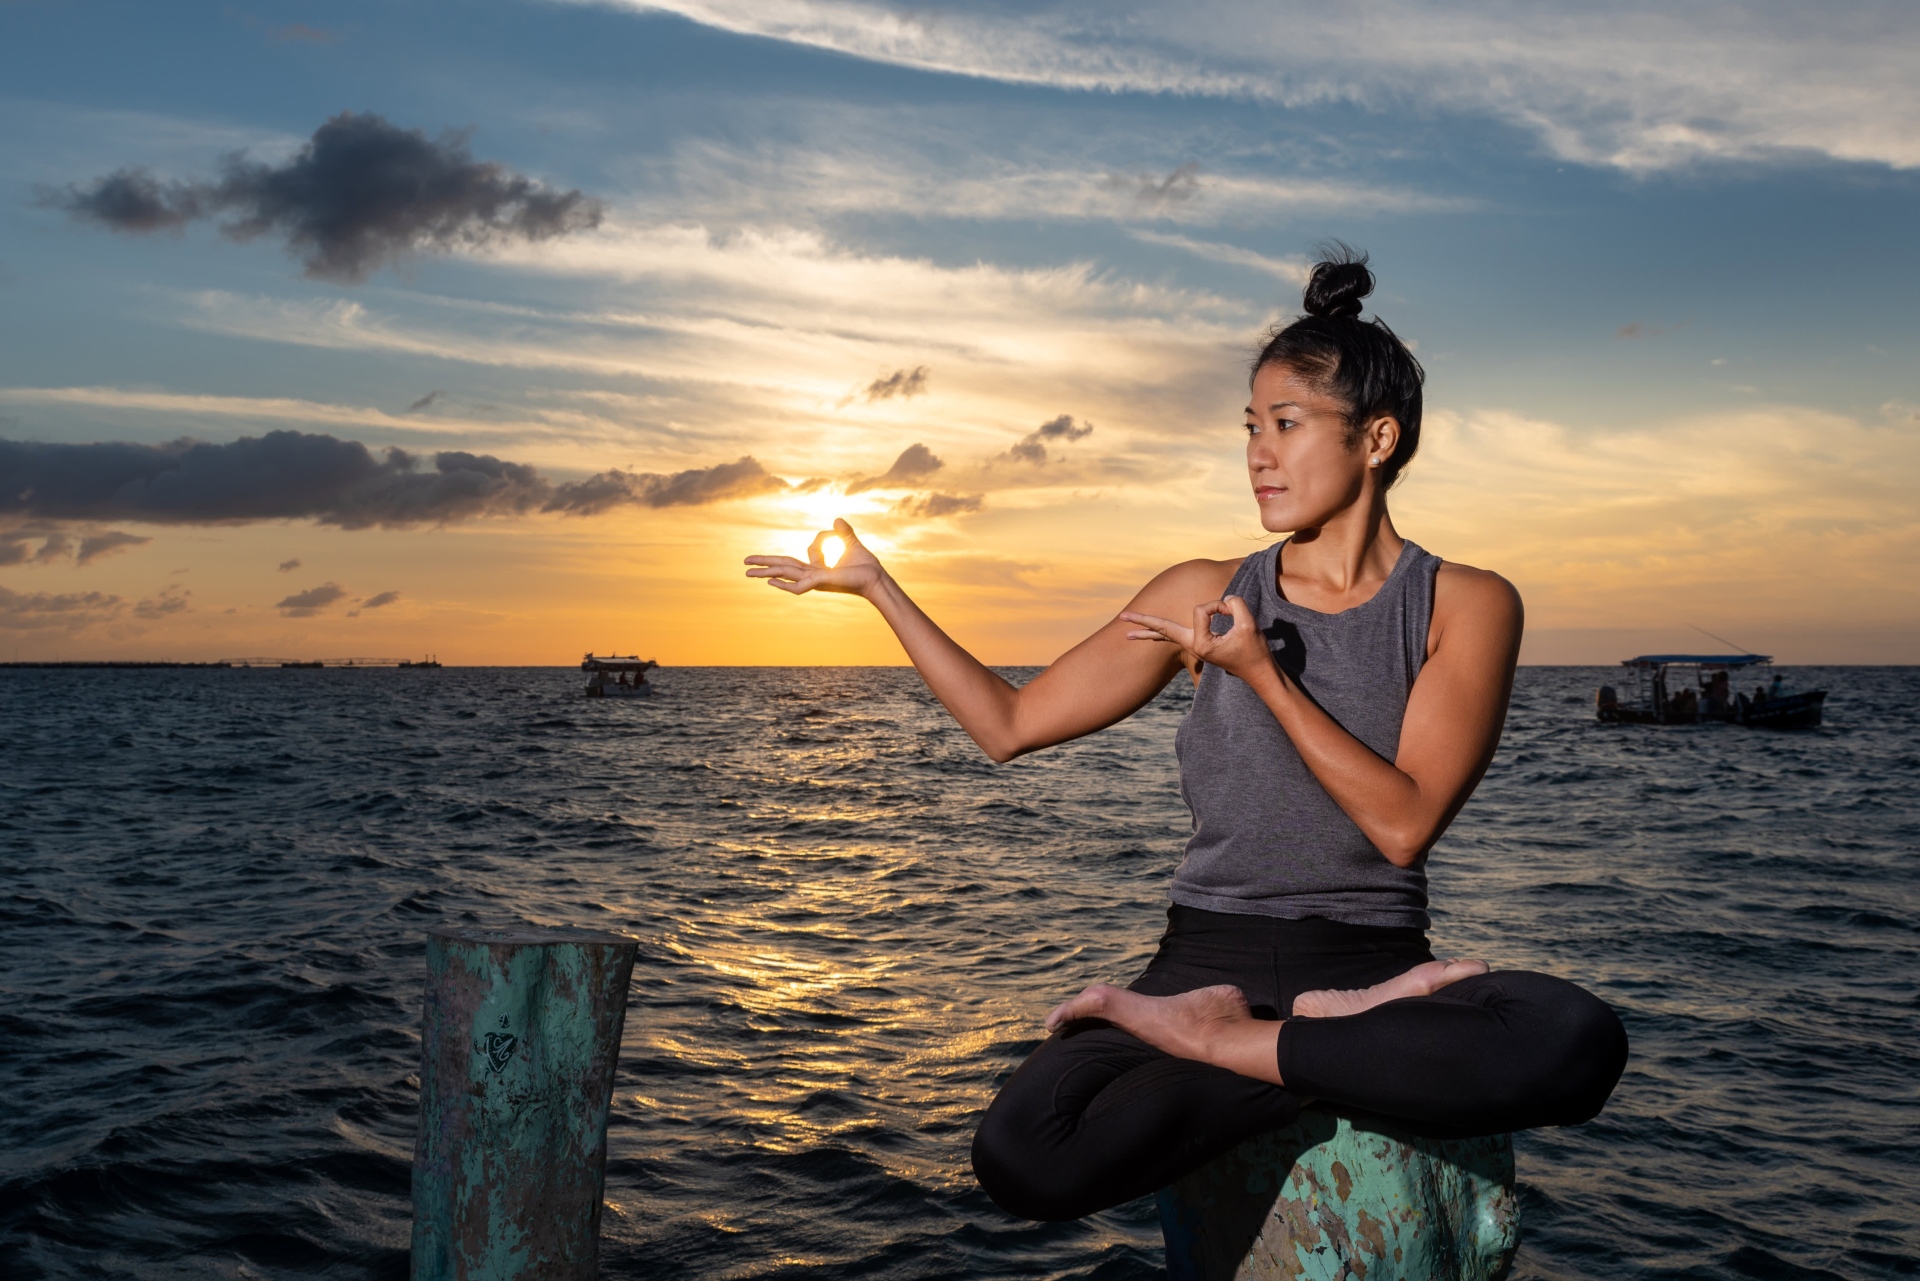 Nữ giám đốc người Mỹ gốc Việt bỏ việc lương cao, khởi nghiệp với lớp dạy yoga: 'Đây là khoản đầu tư cho chính tôi'